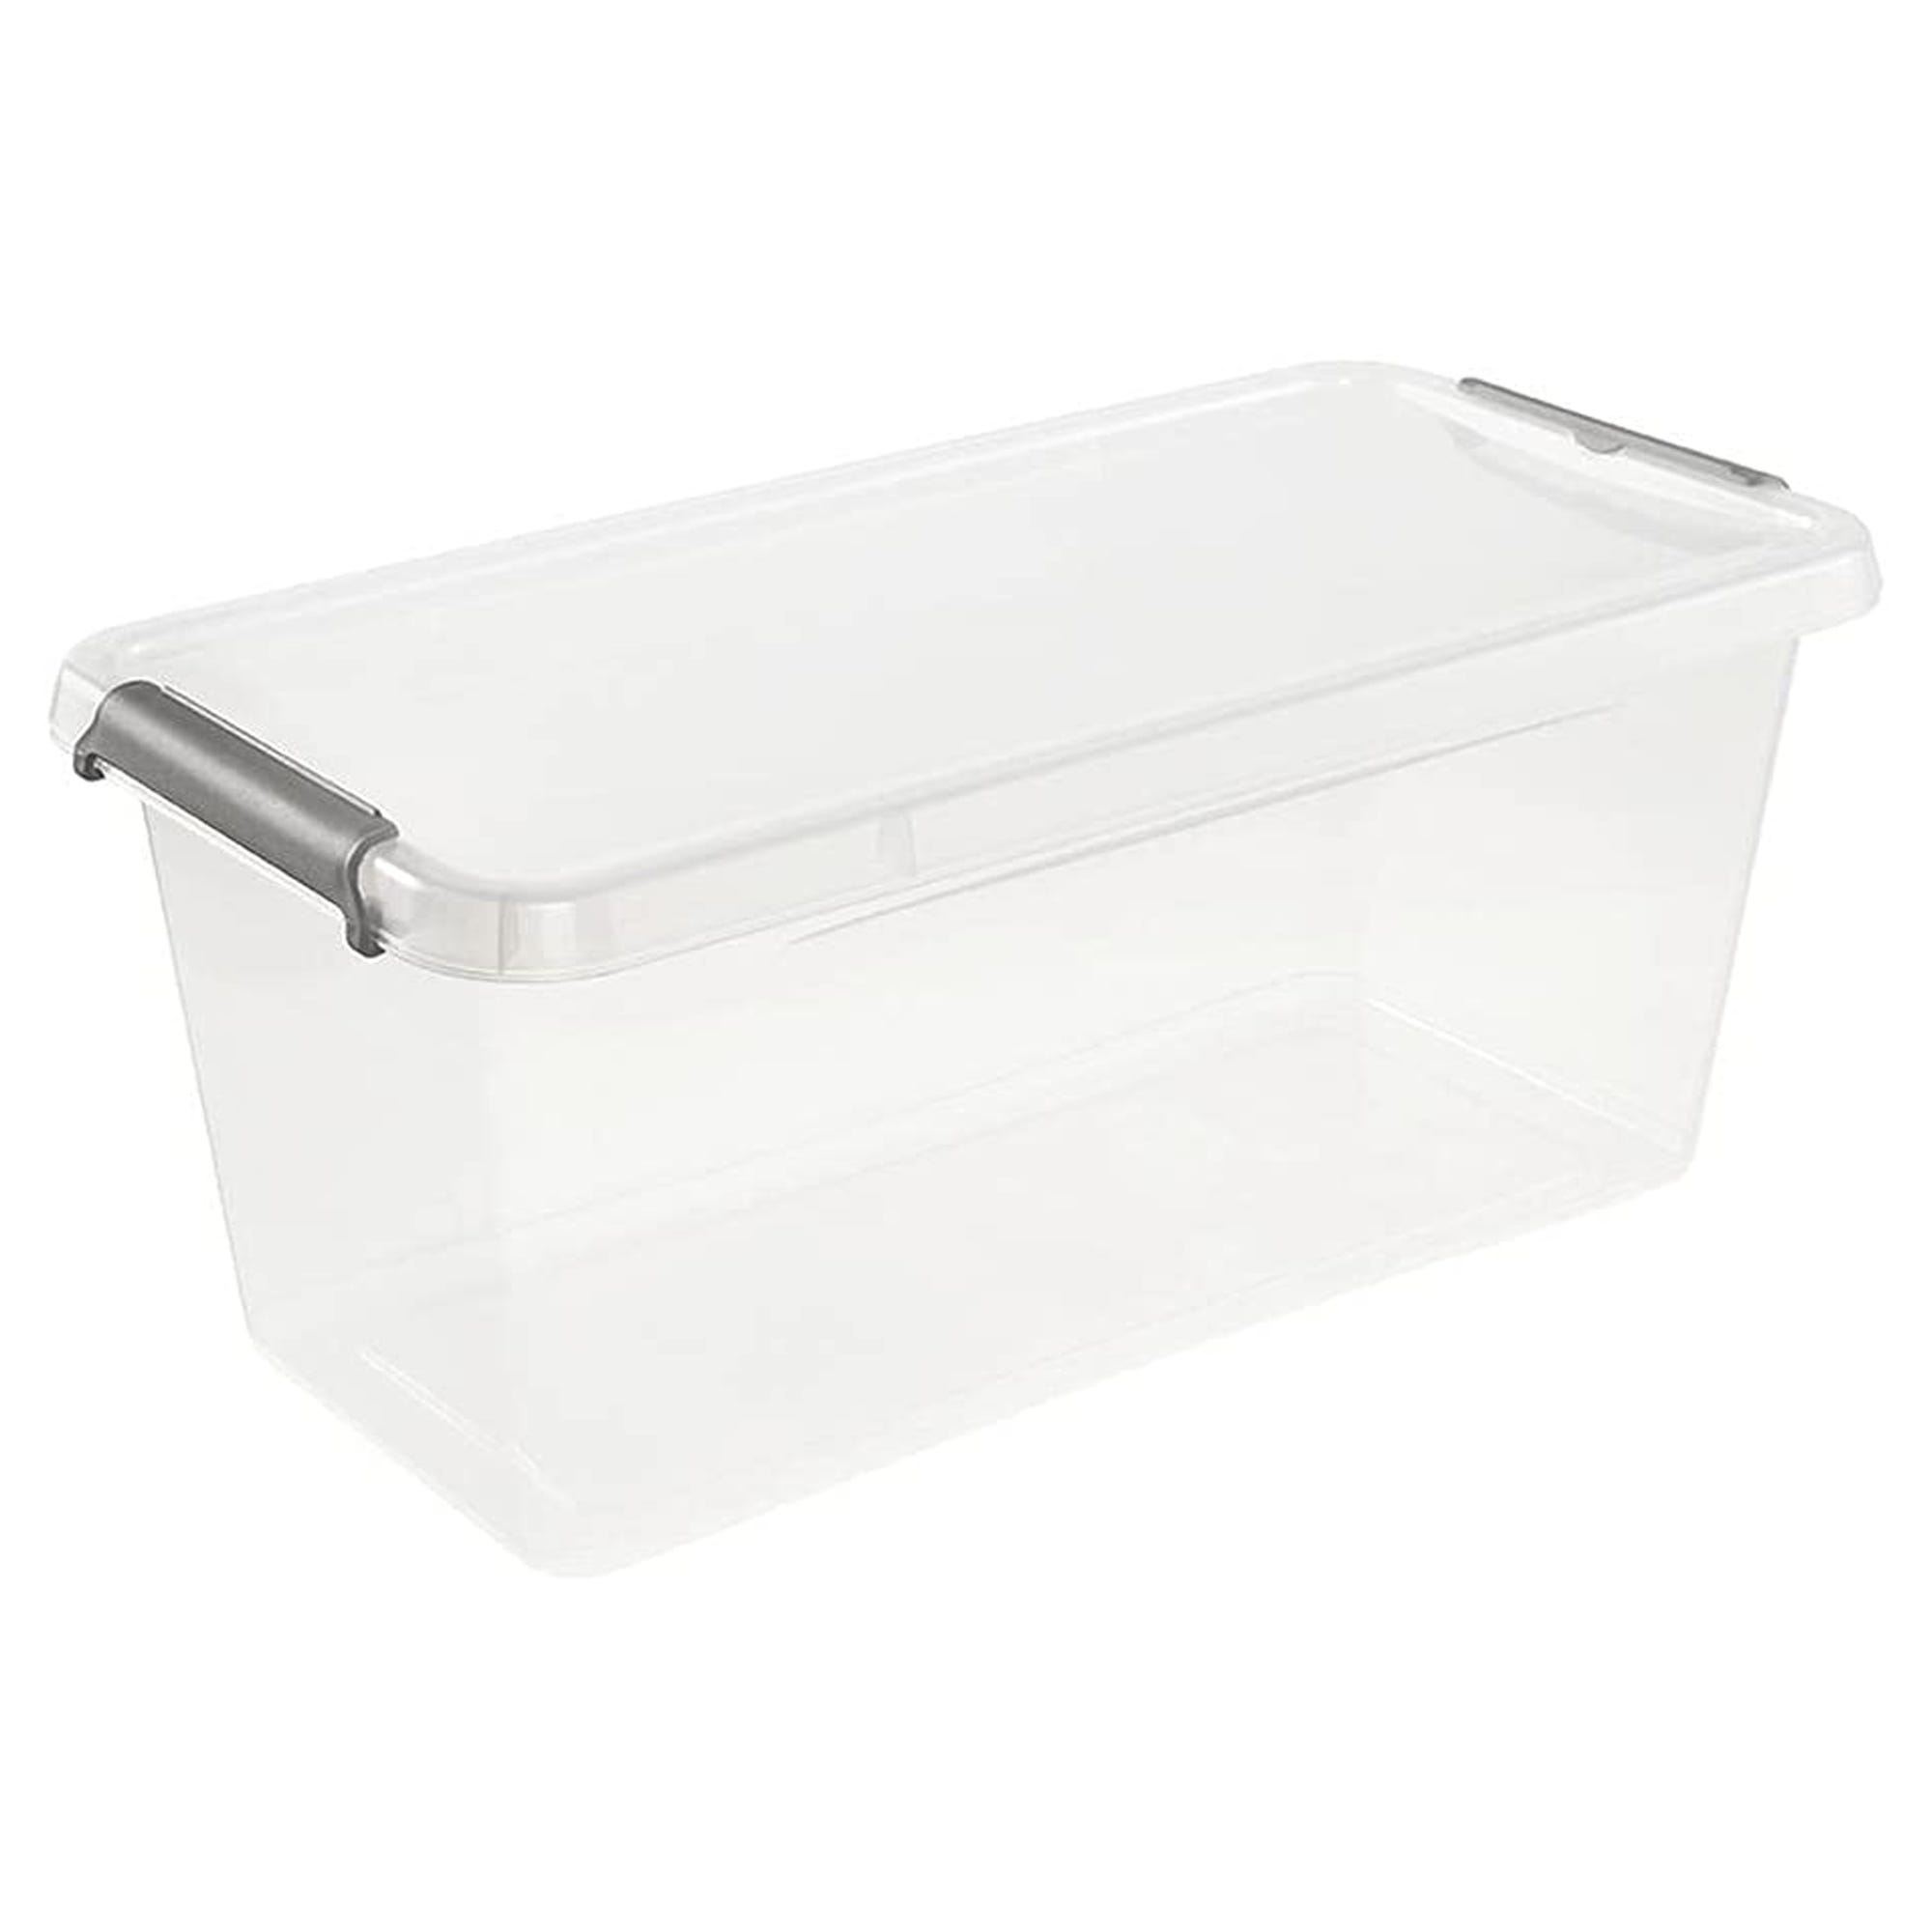 Boîte de rangement / clip box Lara, 8,35 litres, Empilable modulable,  Couvercle avec clip pour fermer, Transparent